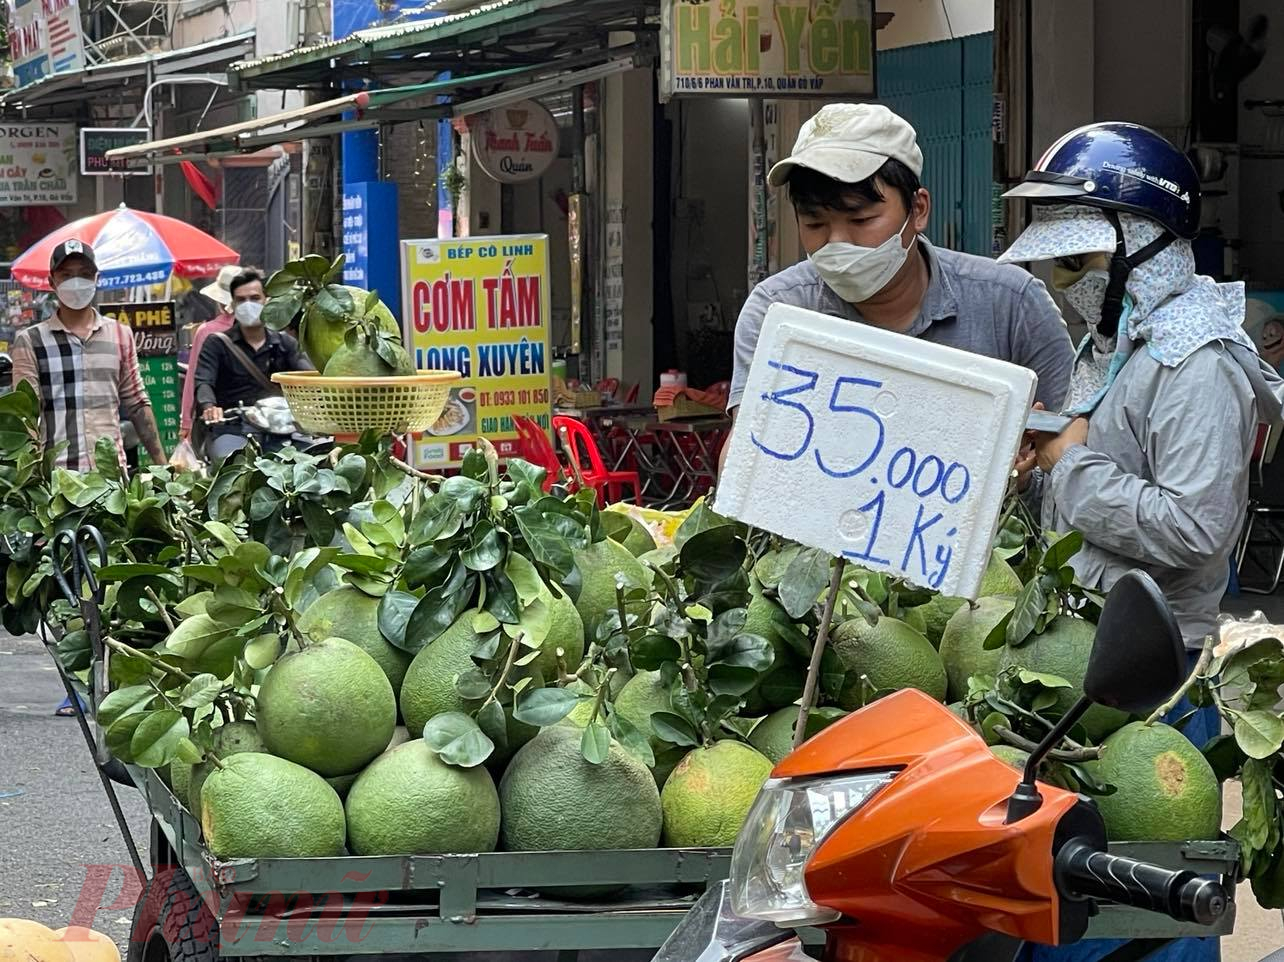 Bưởi da xanh bán dạo giá chỉ 35.000 đồng/kg, nhưng so sánh sẽ thấy trái nhỏ hơn, cầm không chắc tay bằng bưởi da xanh bán trong sạp chợ giá 50.000 đồng/kg.